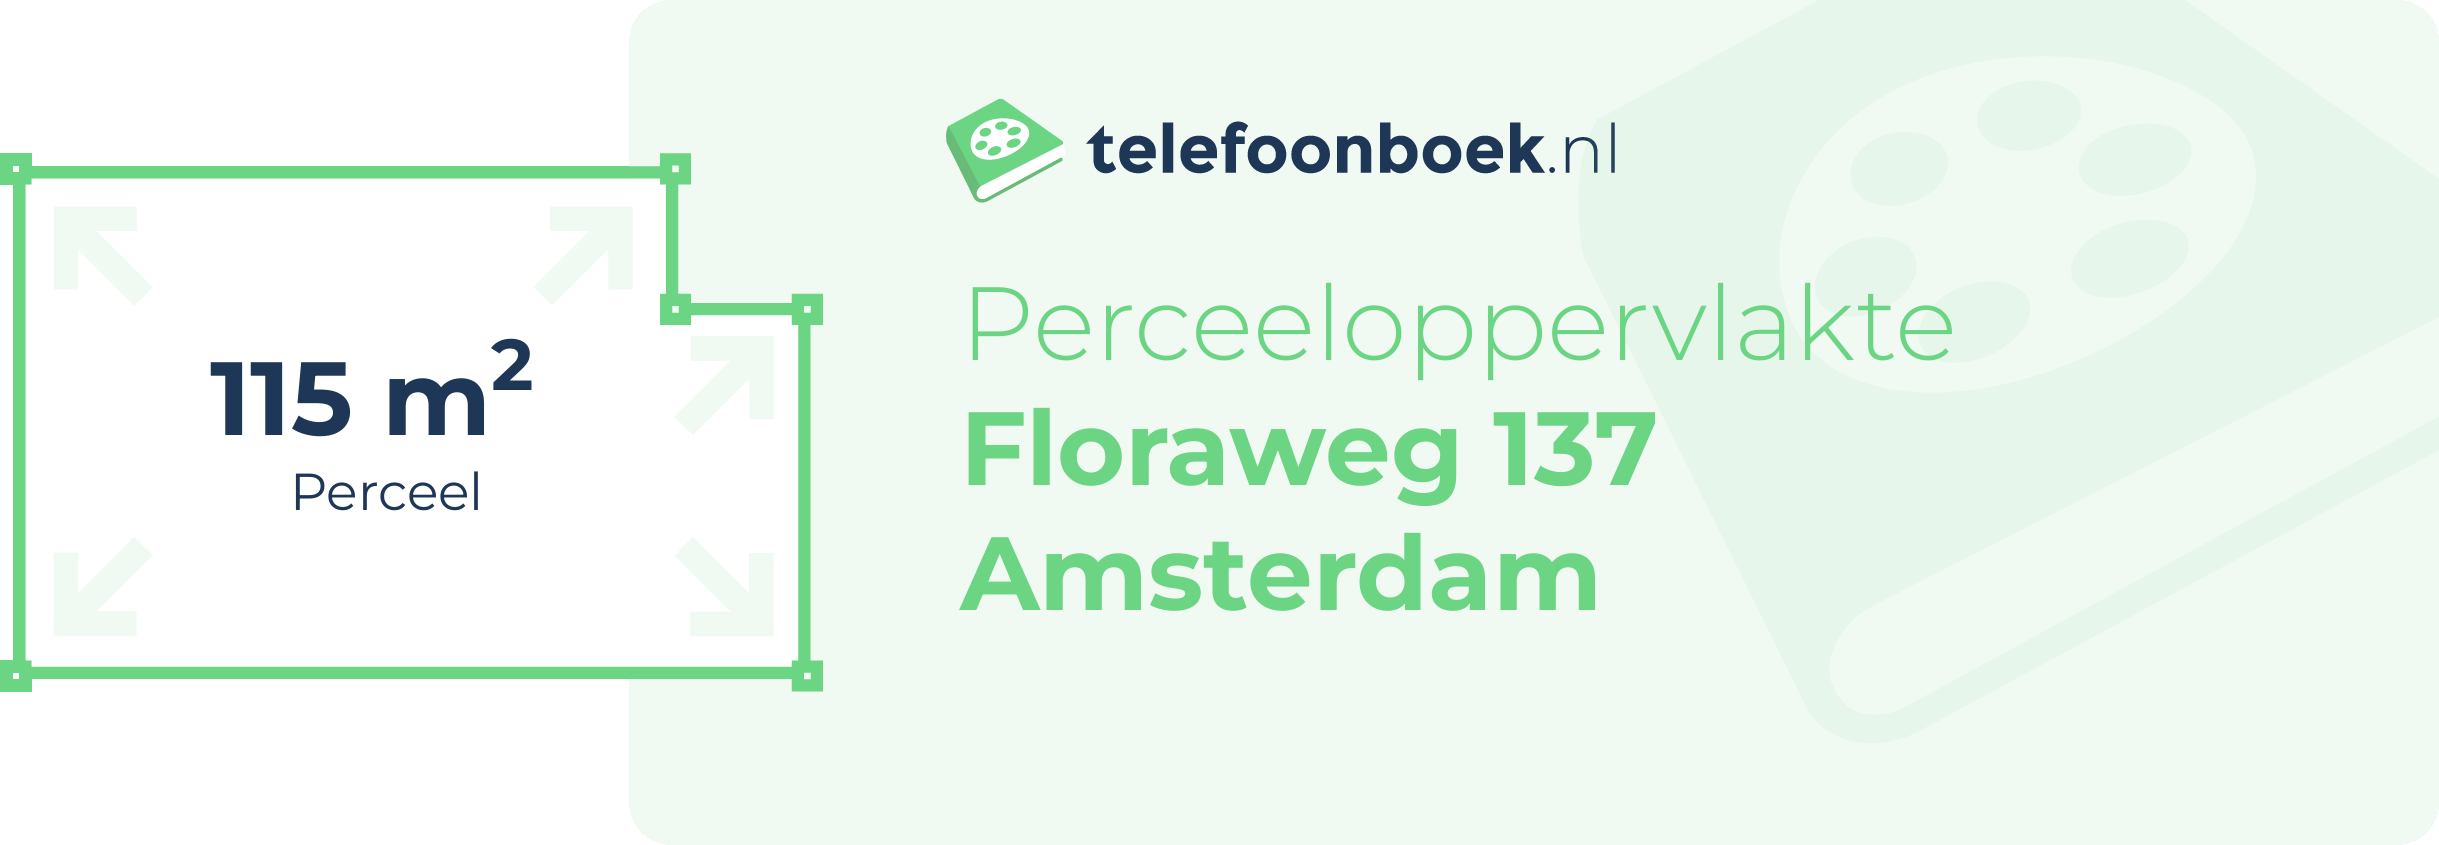 Perceeloppervlakte Floraweg 137 Amsterdam